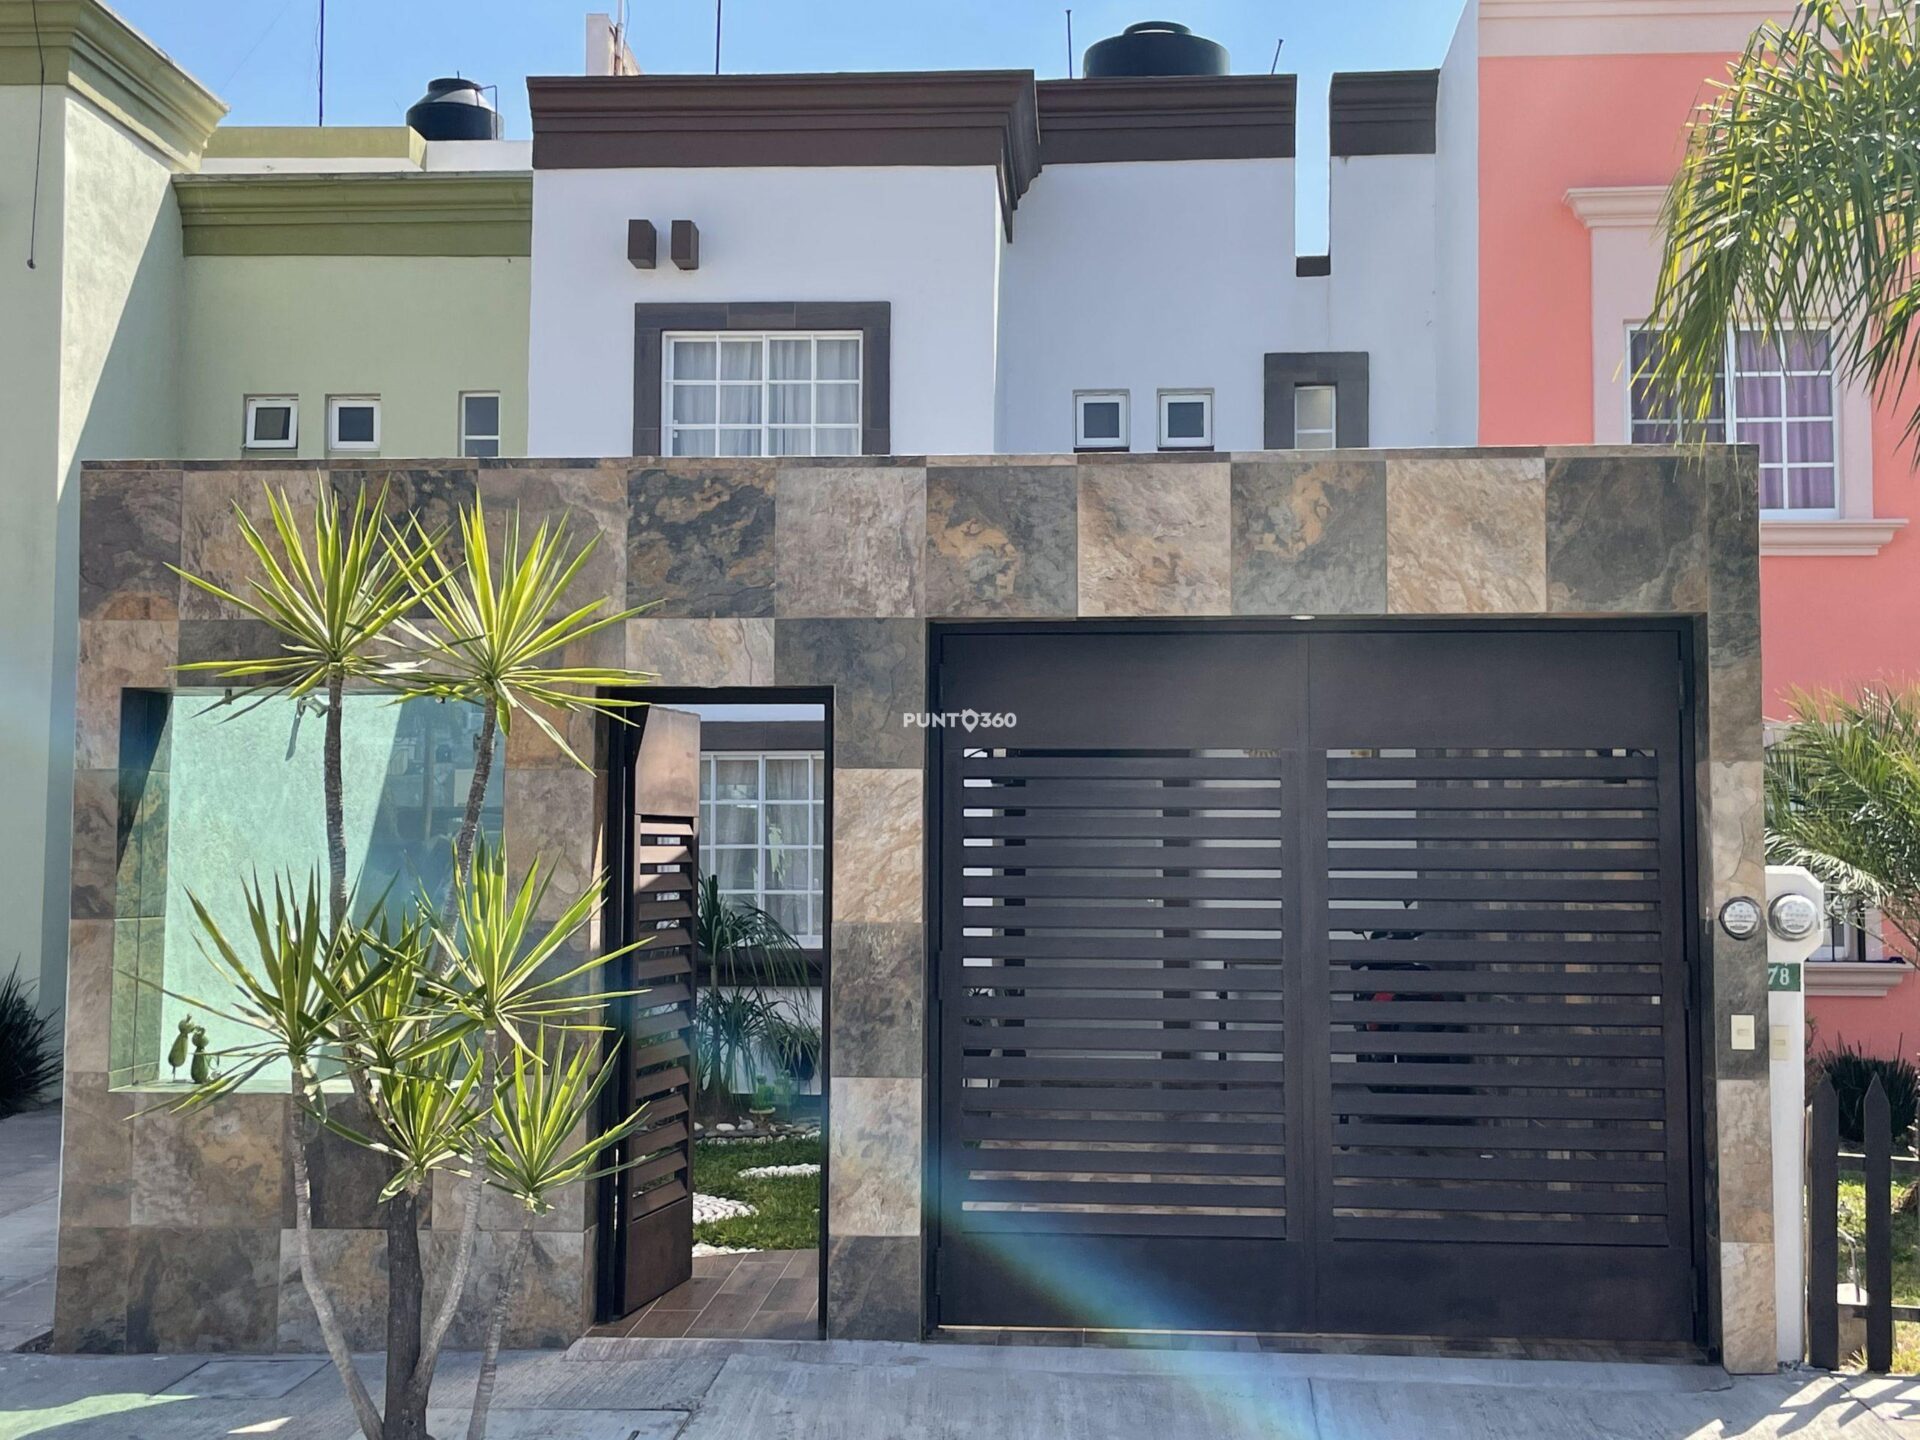 Casa en venta Moroleón Guanajuato, fraccionamiento rinconadas